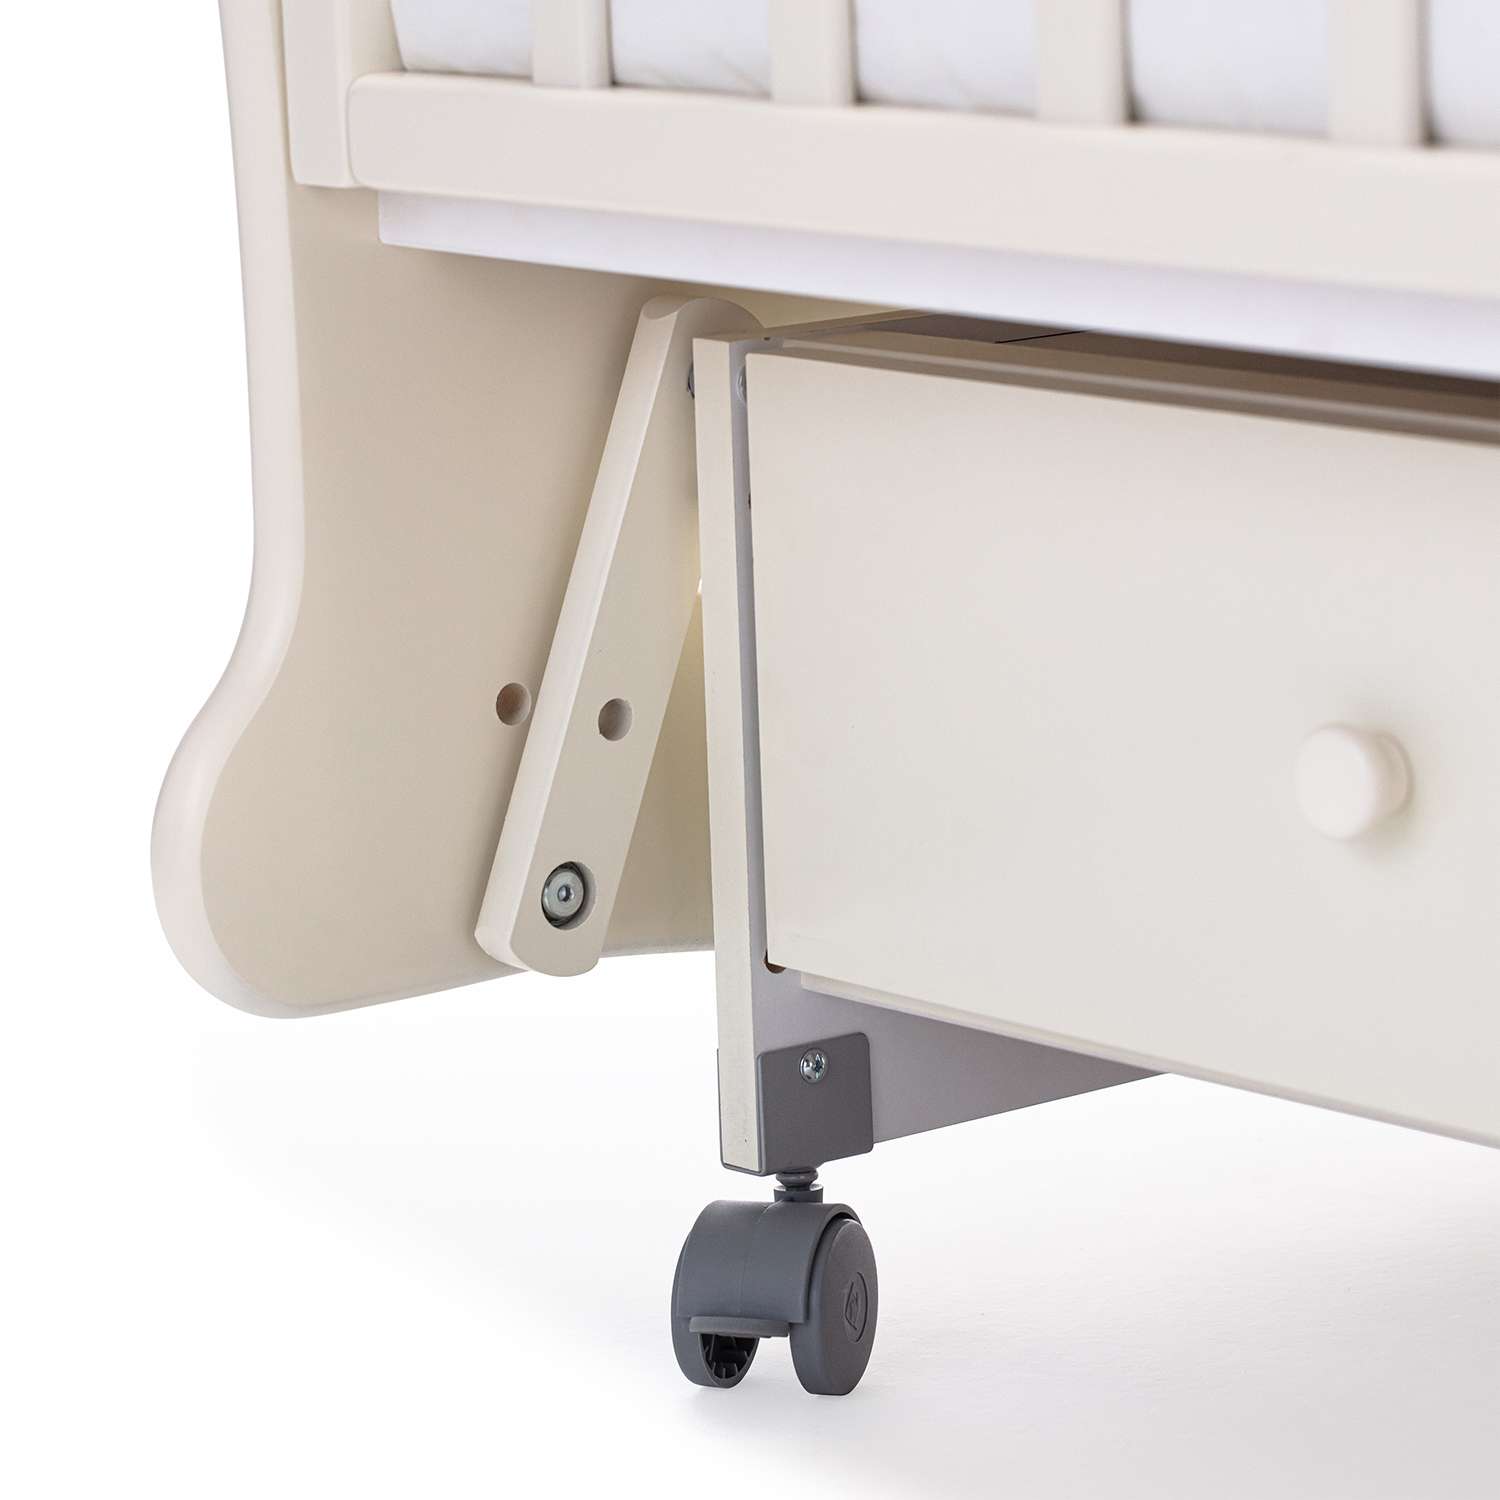 Детская кроватка Nuovita Stanzione прямоугольная, поперечный маятник (ваниль) - фото 18